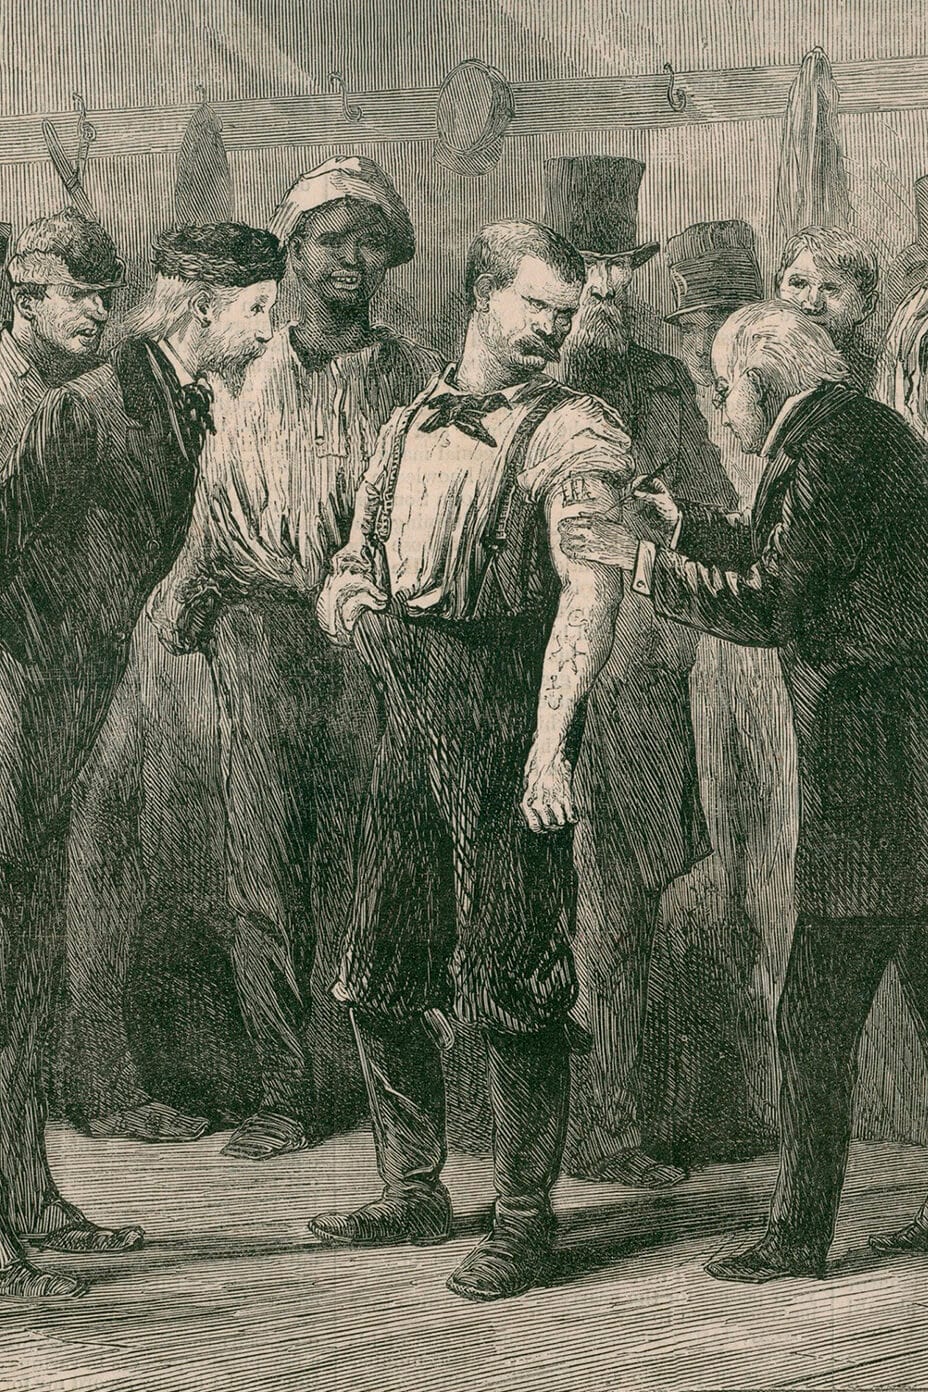 تلقى الكثيرون في مدينة نيويورك اللقاح ضد الجدري في عام 1872